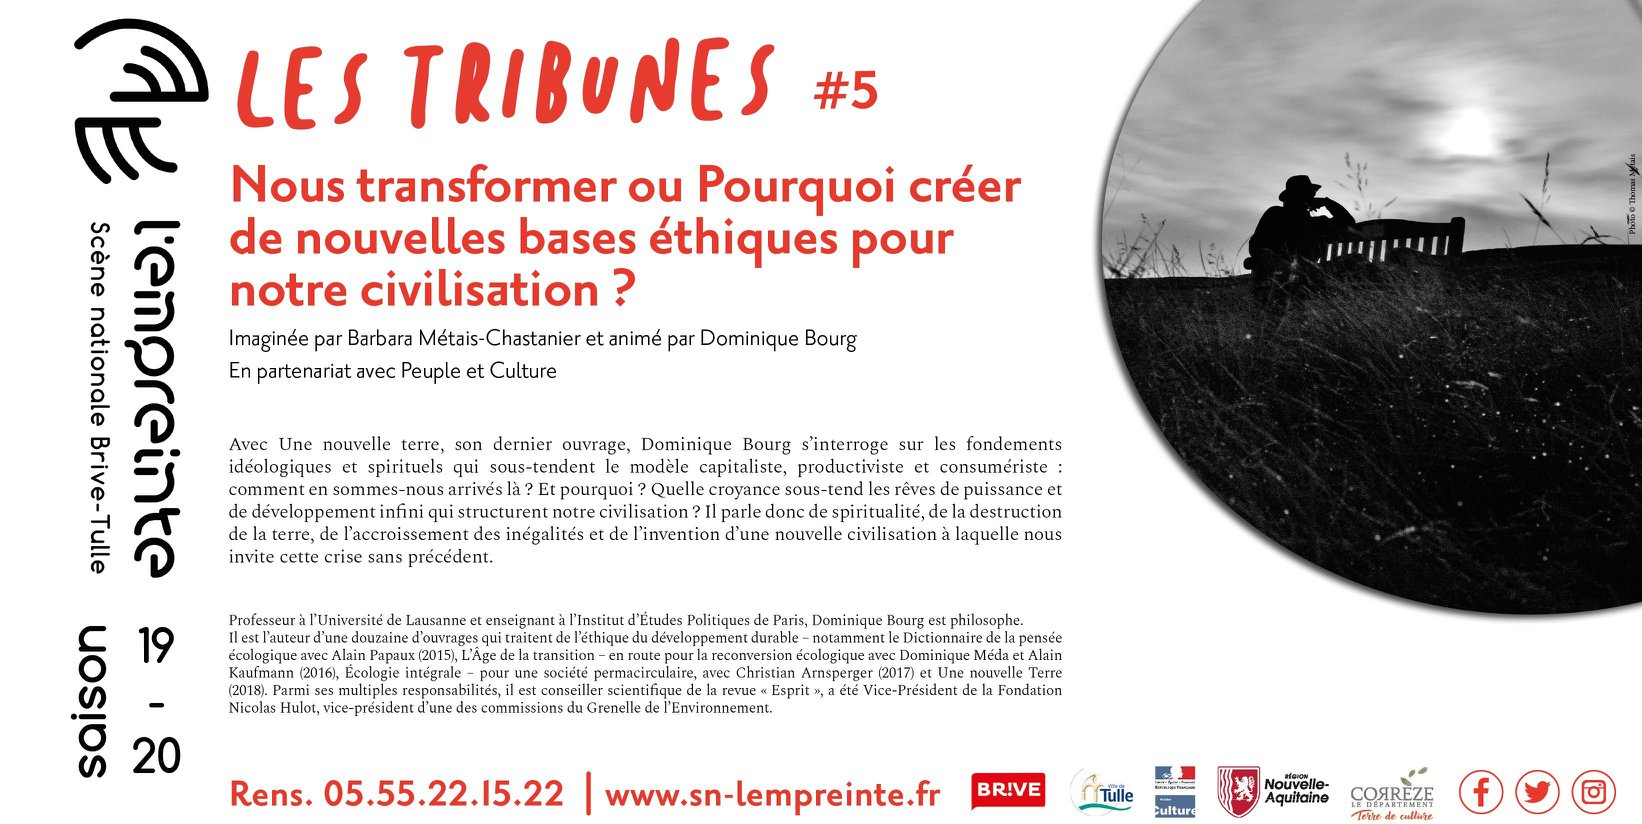 Conférence débat Dominique Bourg - Théâtre l'Empreinte Brive - 11-02 à 18h